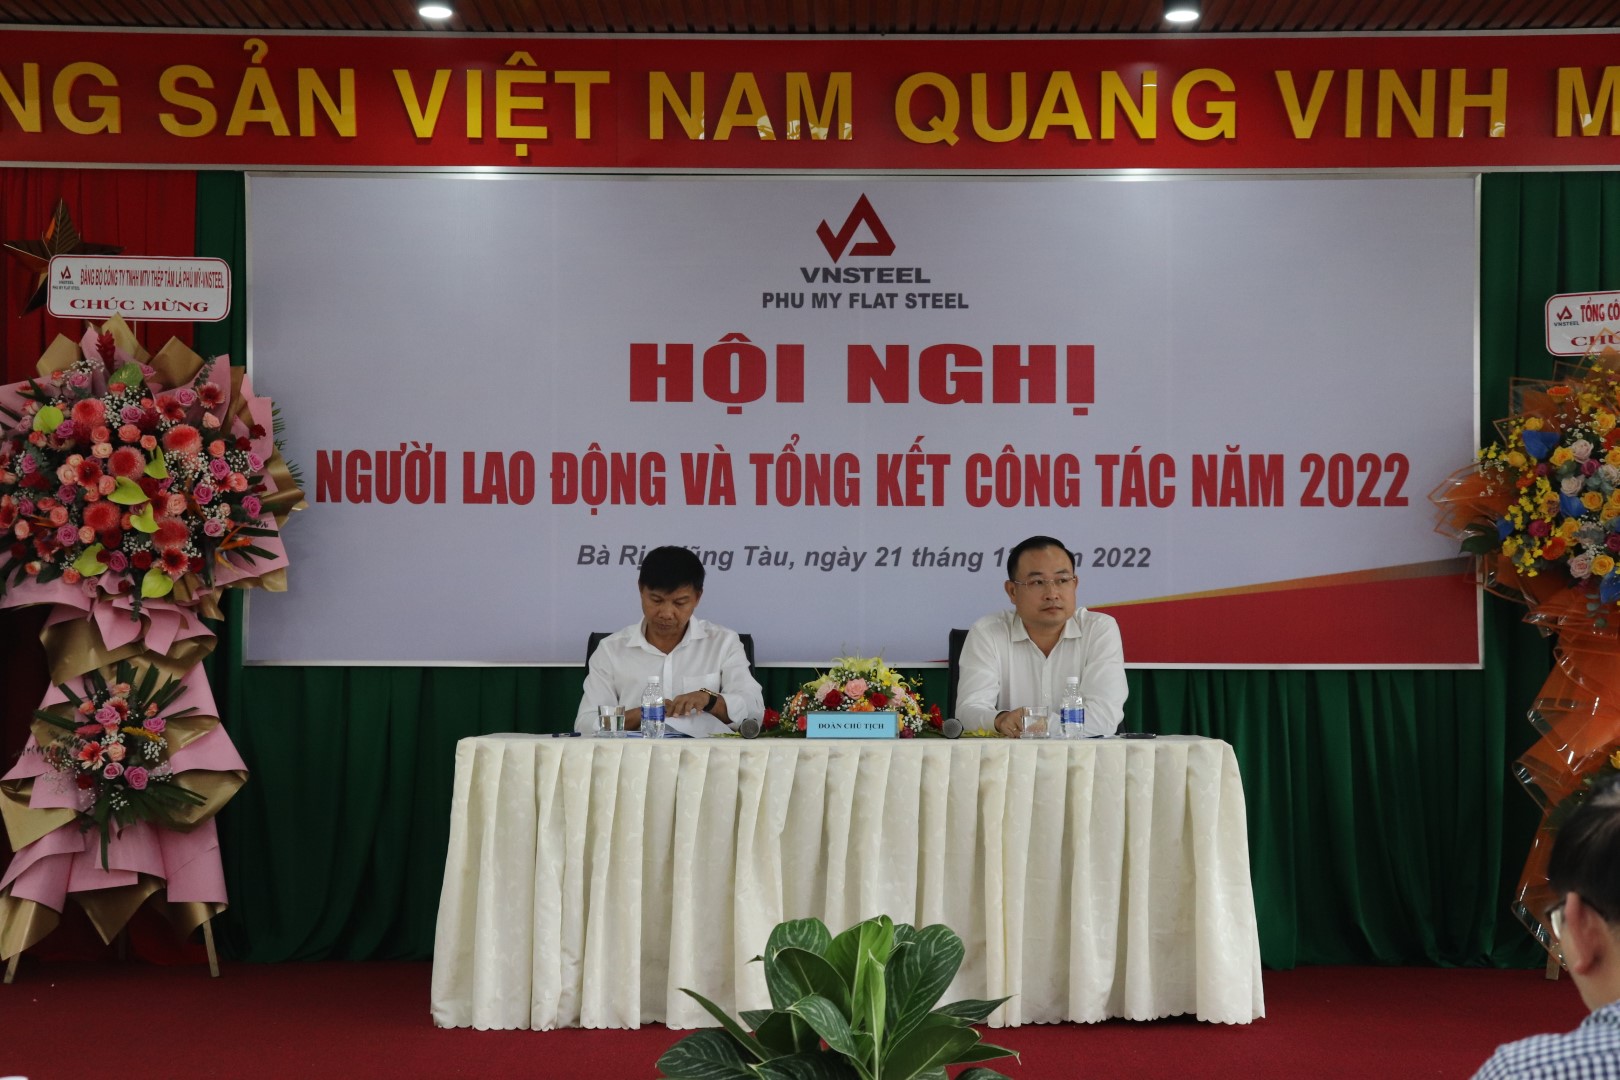 Đoàn chủ tịch Hội nghị Đ/c Nguyễn Tấn Hoành – Tổng giám đốc (ngồi thứ nhất bên trái), Đ/c Võ Văn Nguyên – Chủ tịch công đoàn (ngồi thứ nhất bên phải)